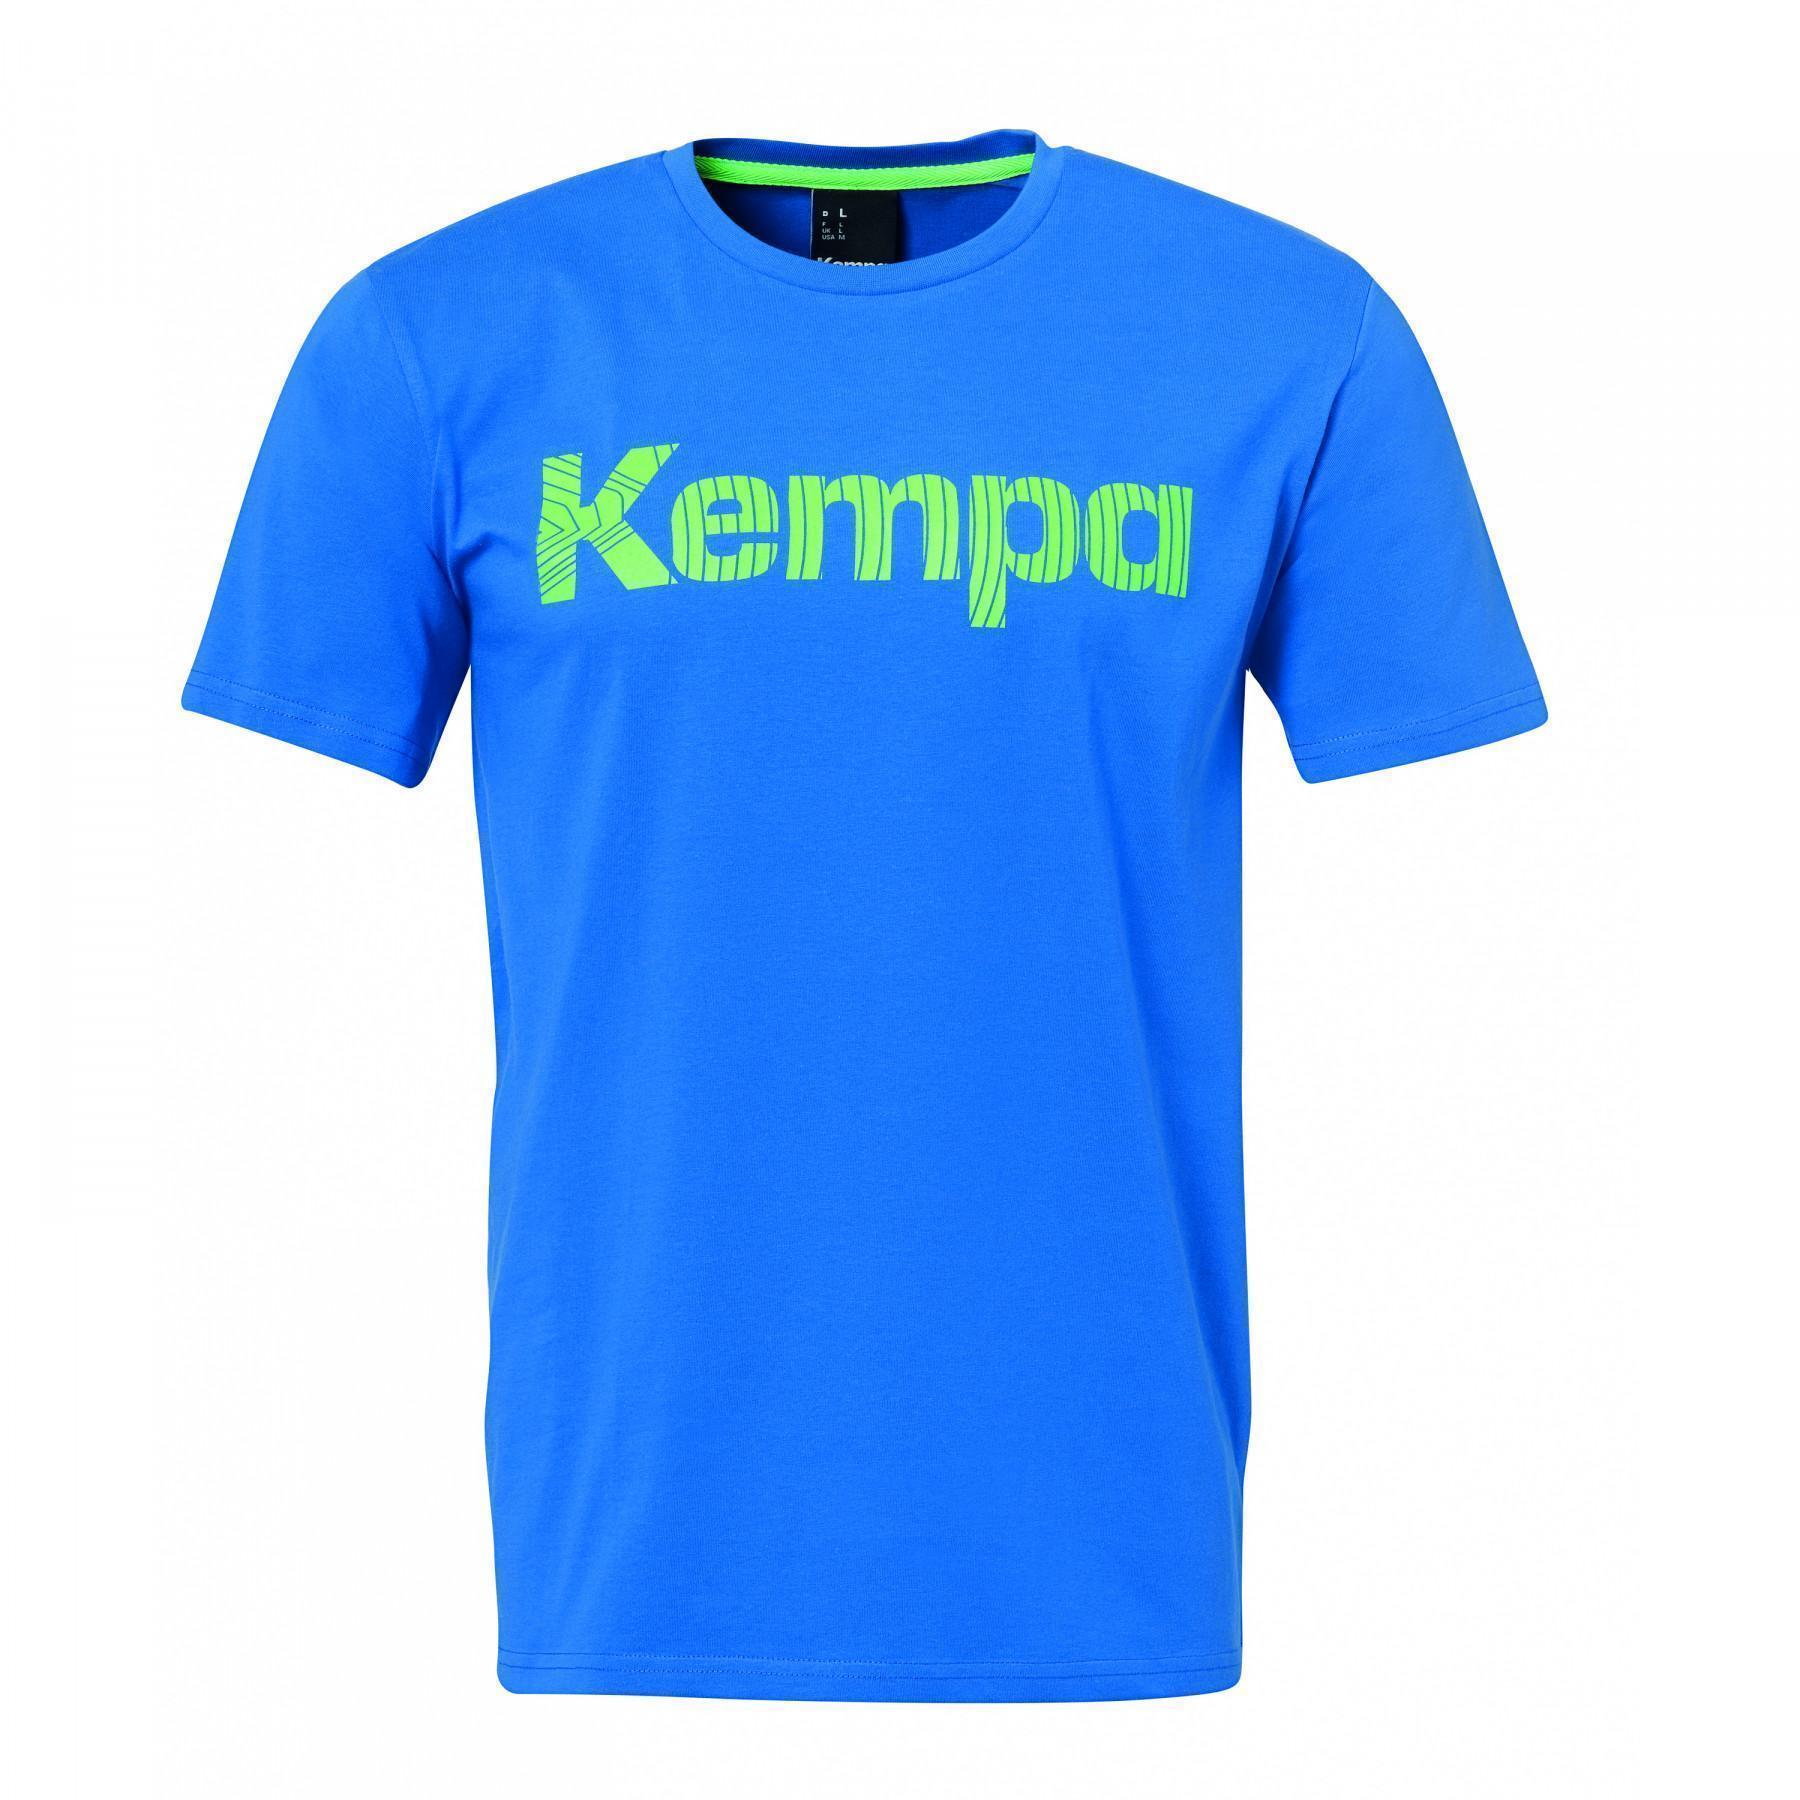 T-Shirt Grafik Kind Kempa